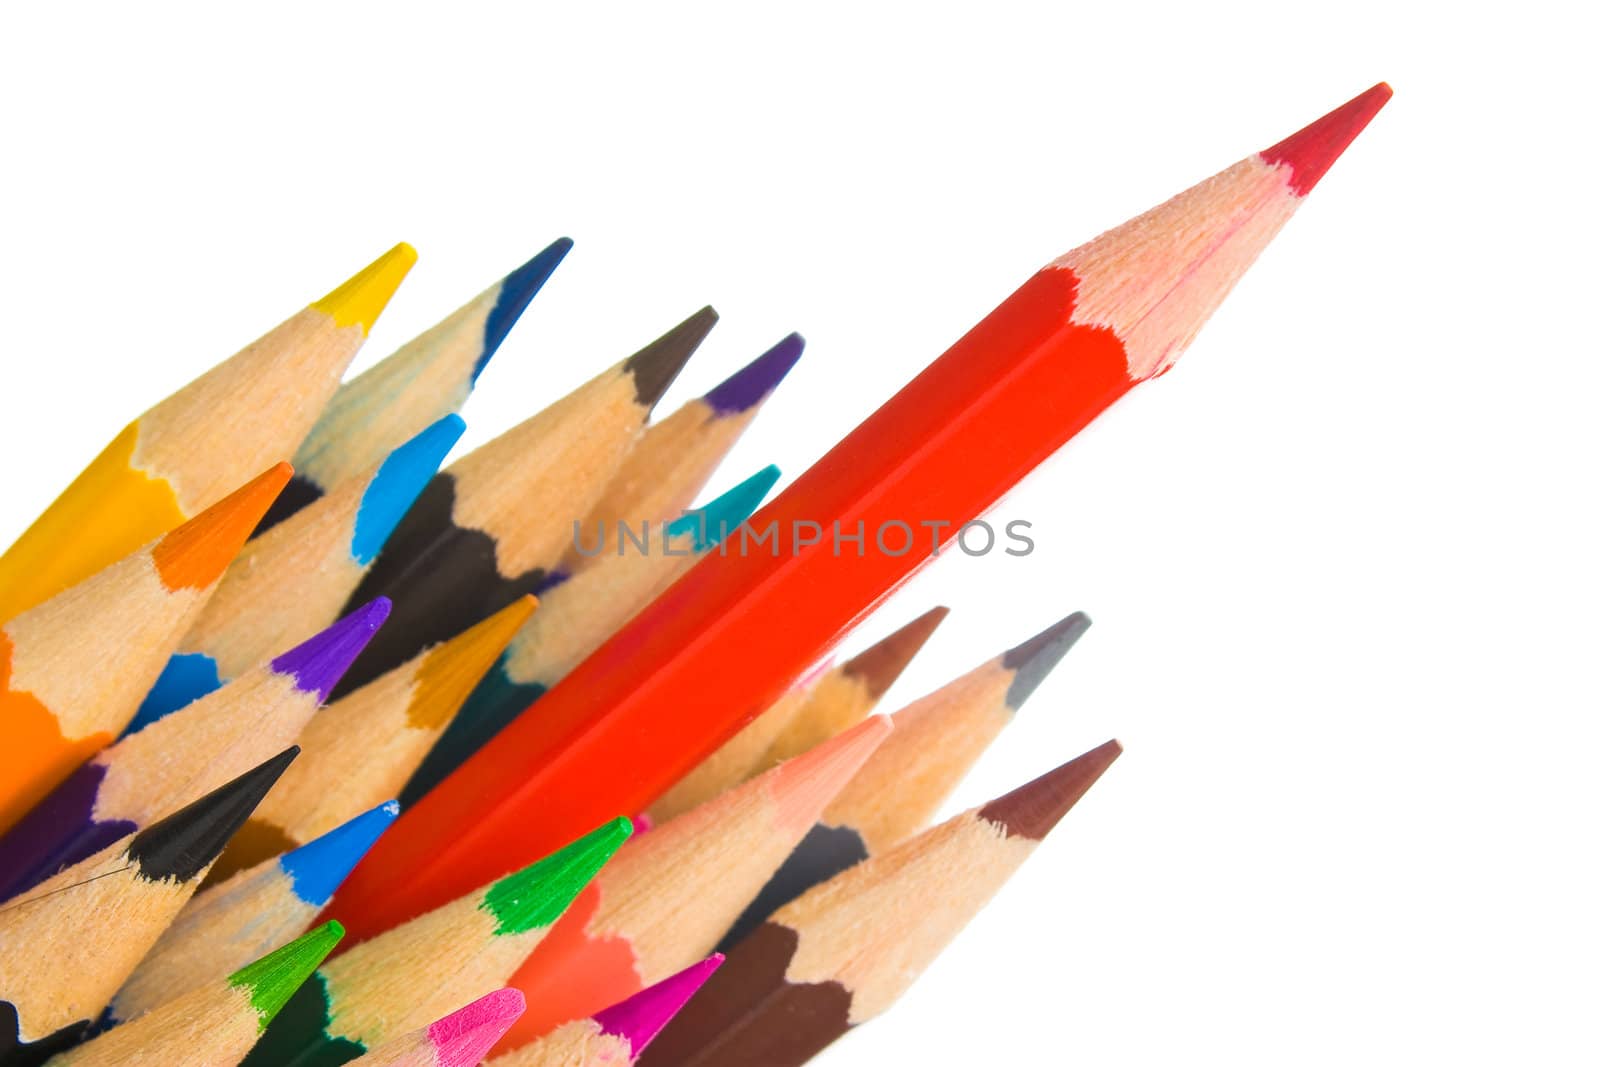 Pencils by oleg_zhukov